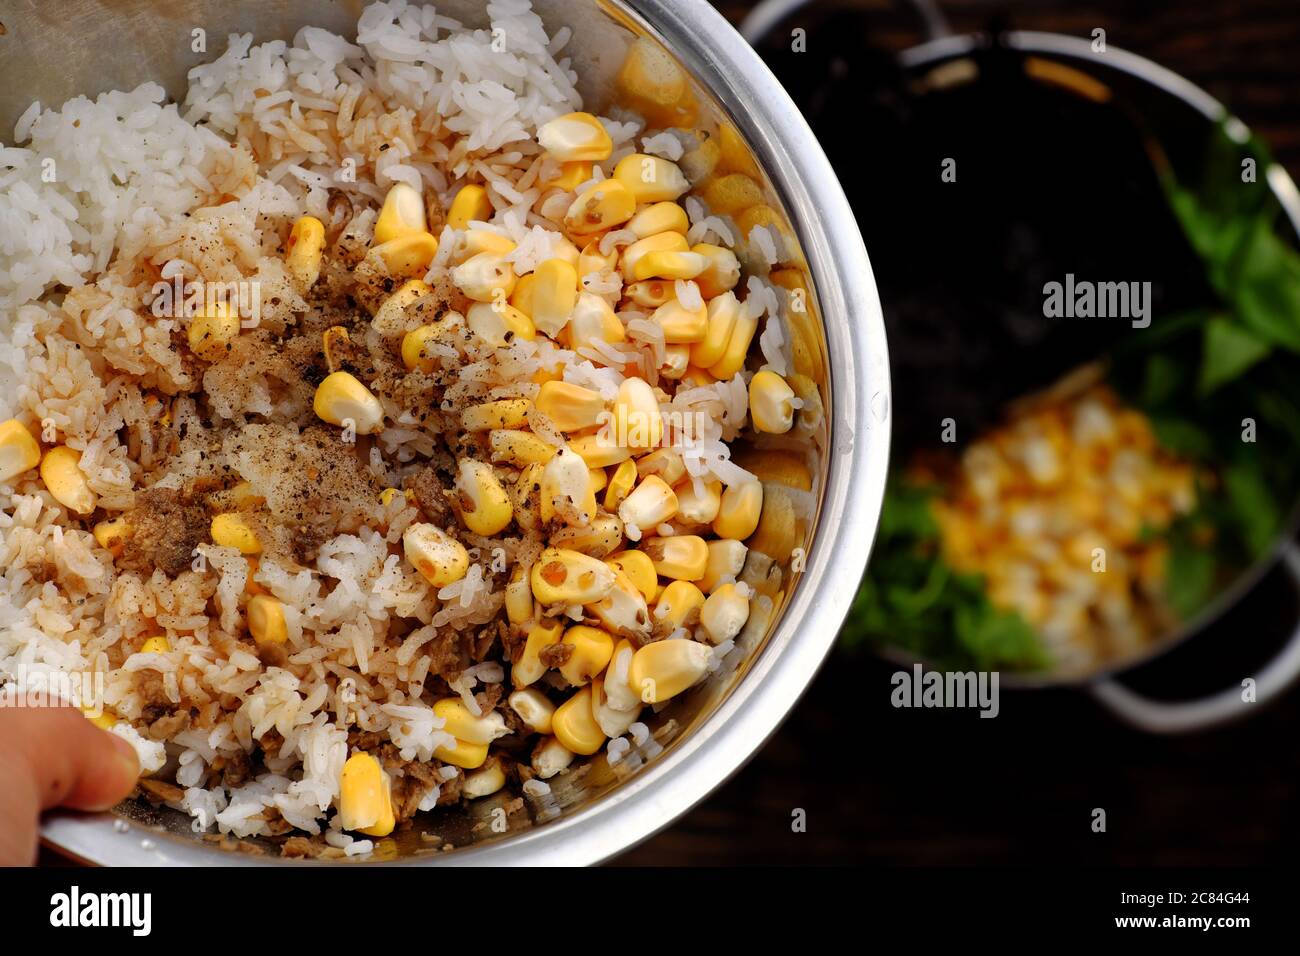 Vista dall'alto della materia prima per il riso fritto vegano vietnamita con mais giallo, ingredienti alimentari da ciotola pronti per cucinare per il pranzo Foto Stock